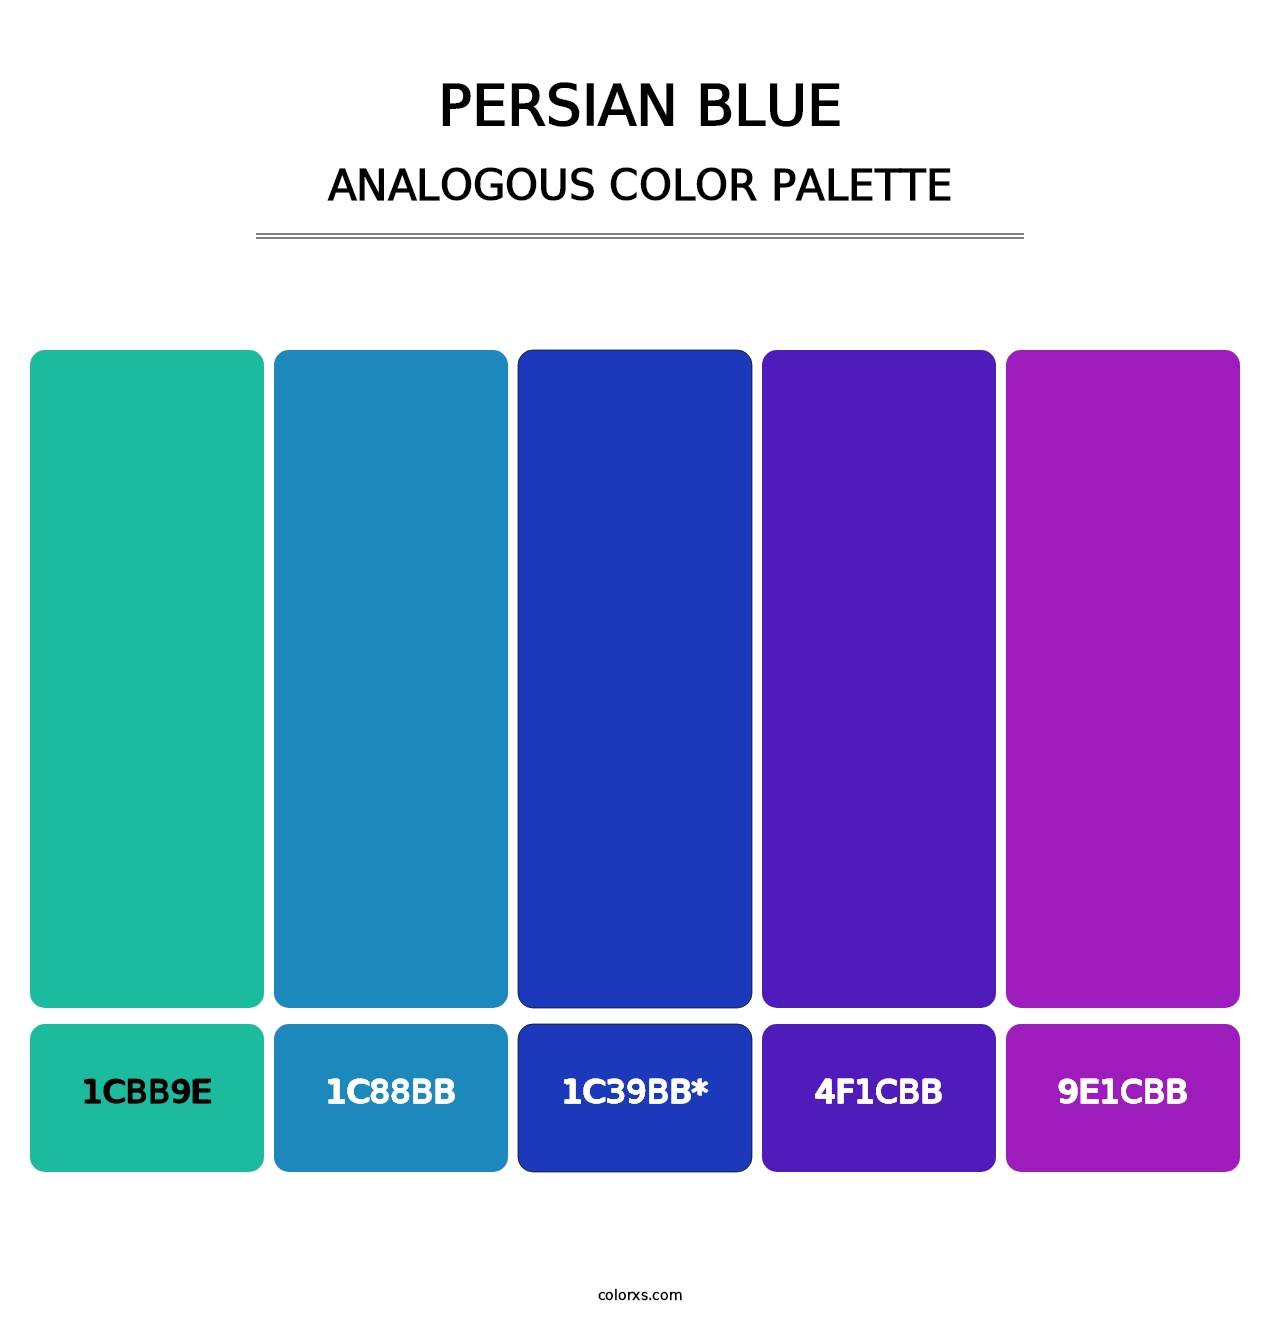 Persian Blue - Analogous Color Palette